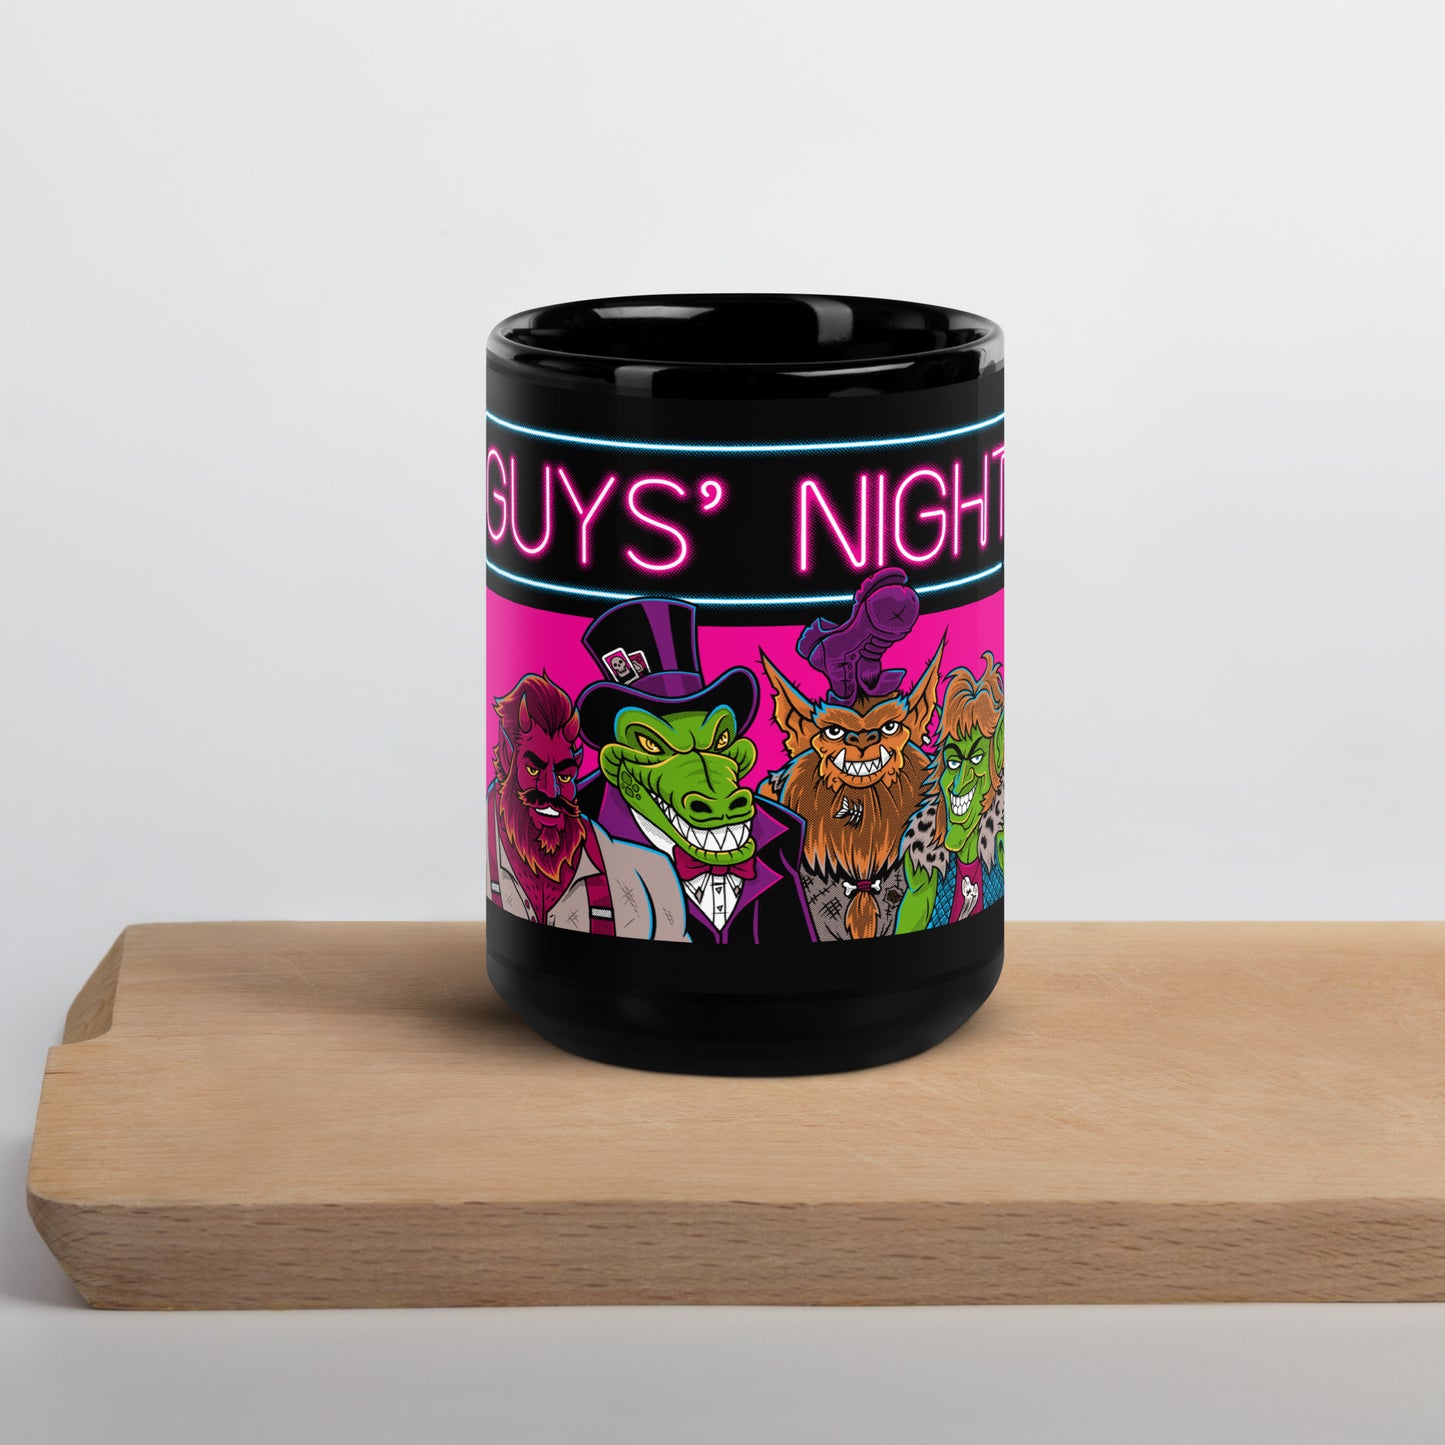 Guys' Night - Mug